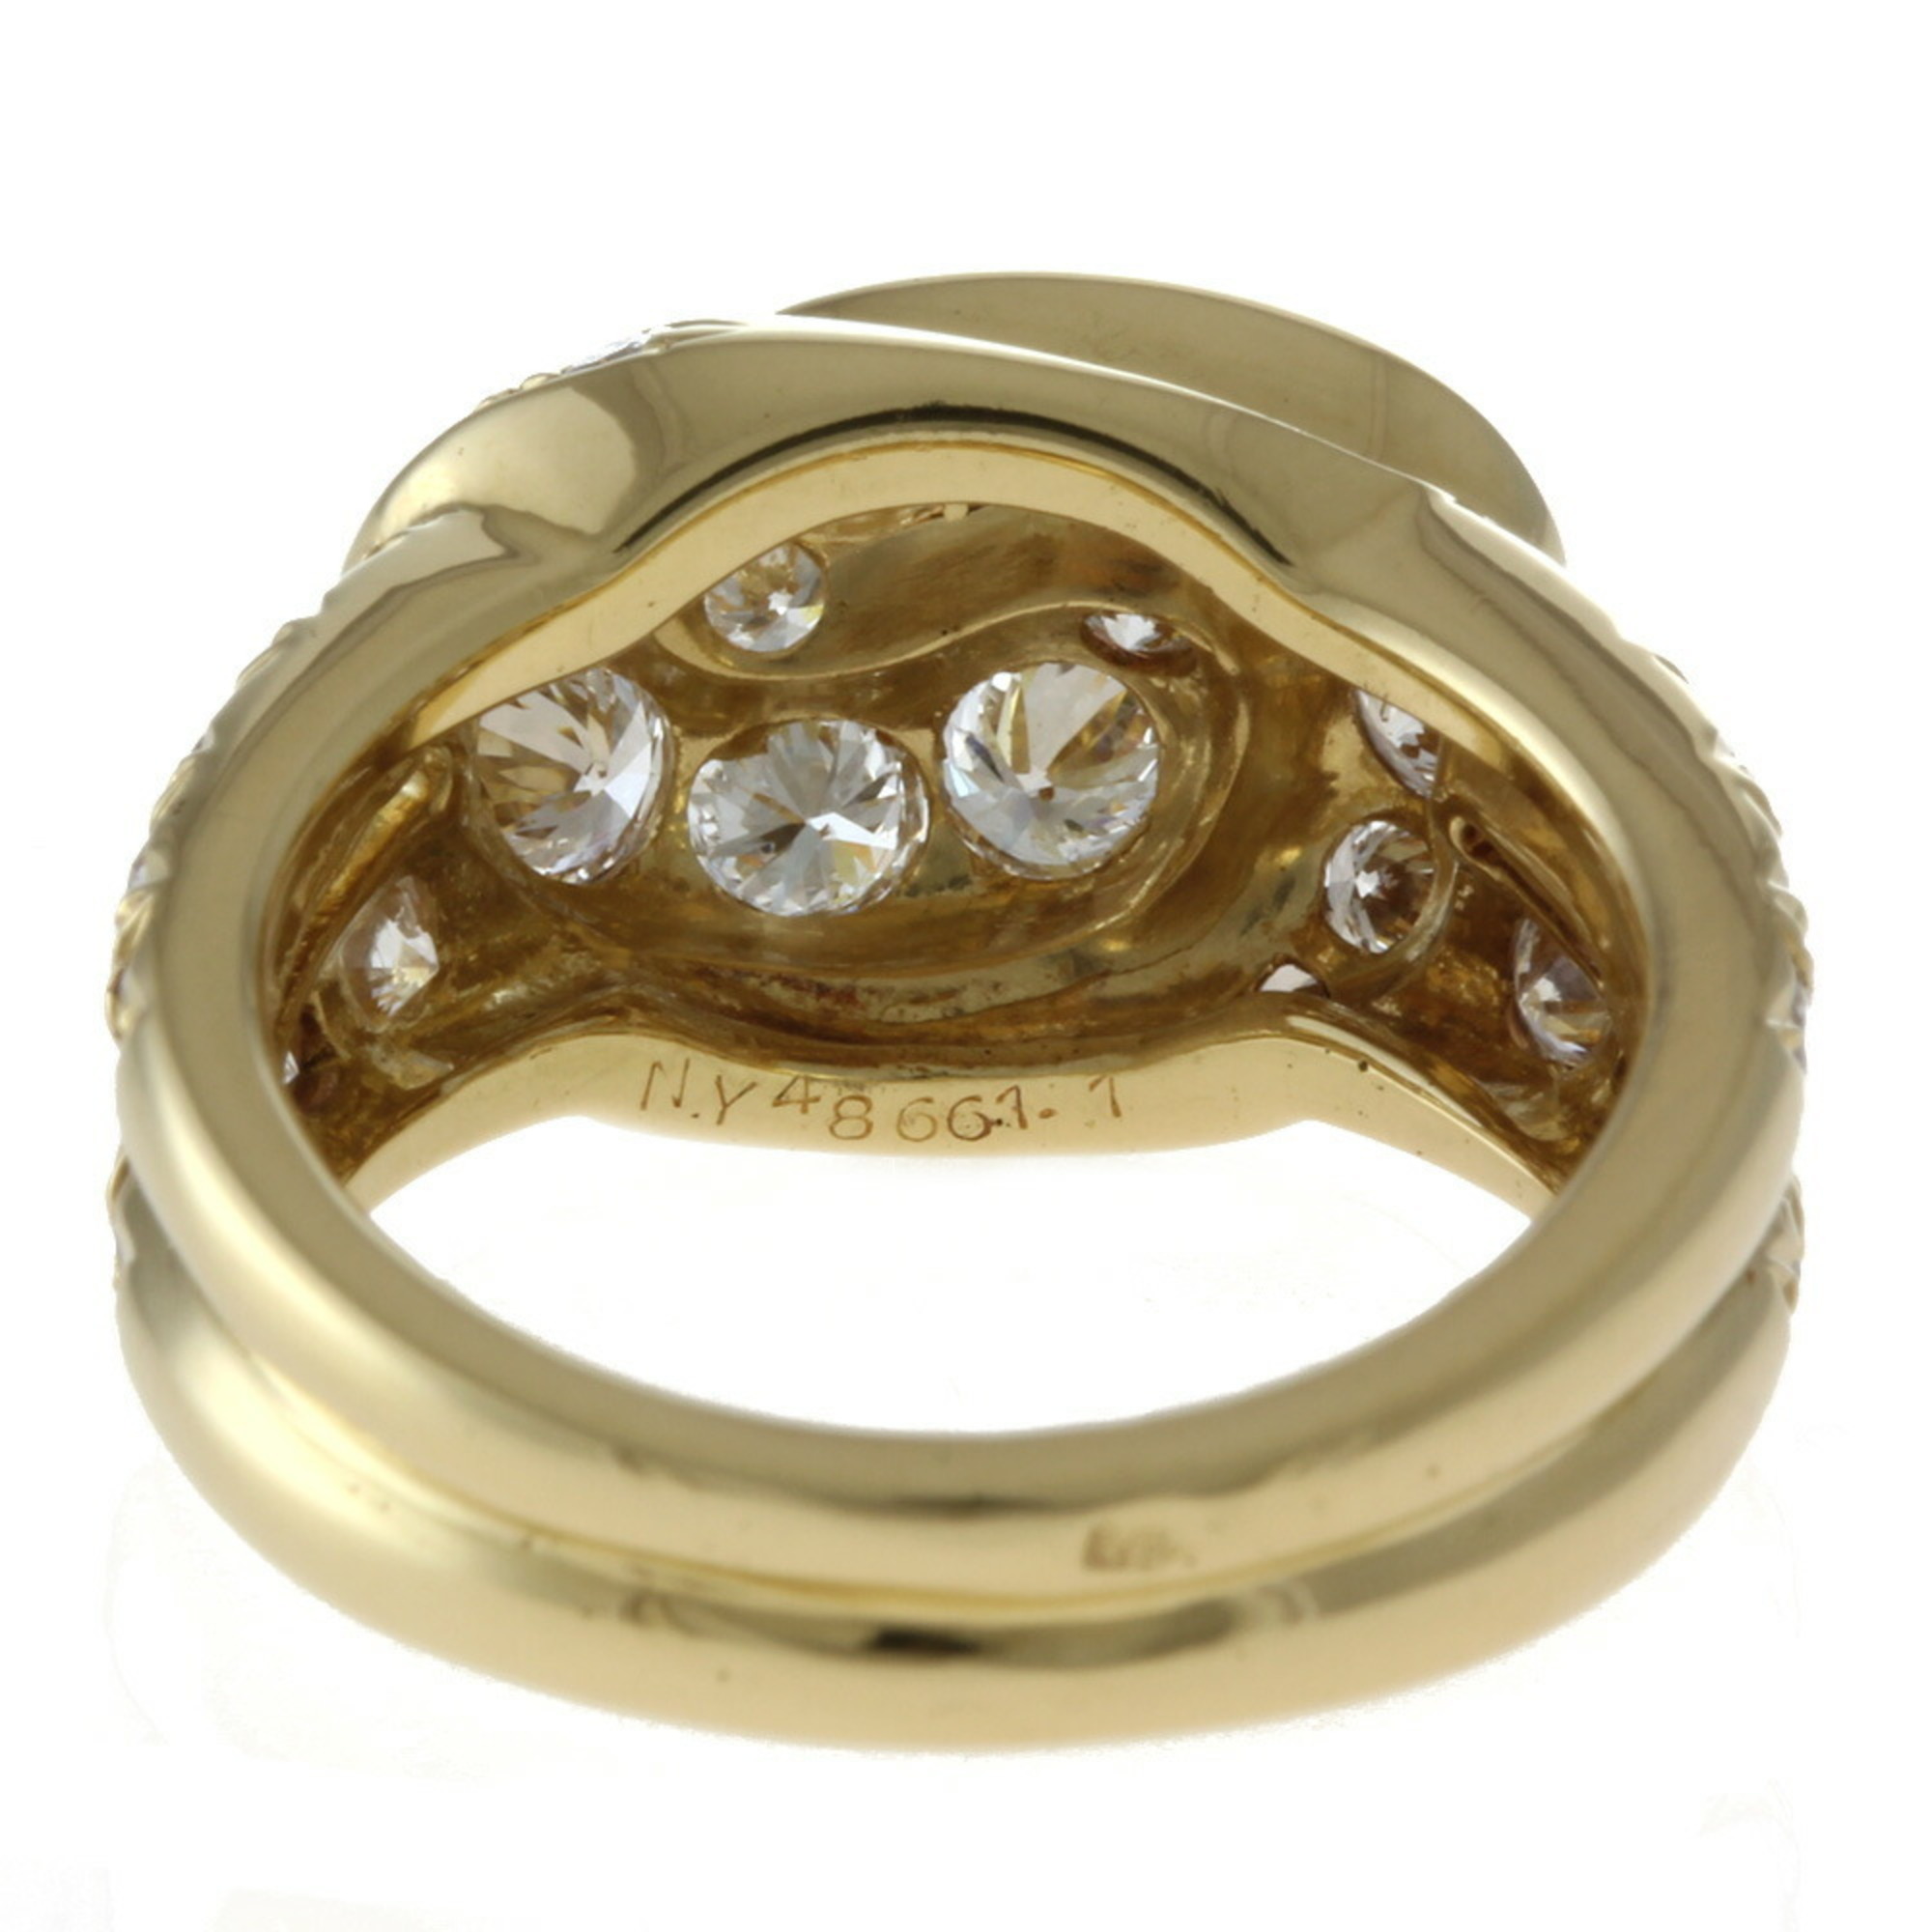 Van Cleef & Arpels Ring No. 12.5 18K K18 Yellow Gold Diamond Women's